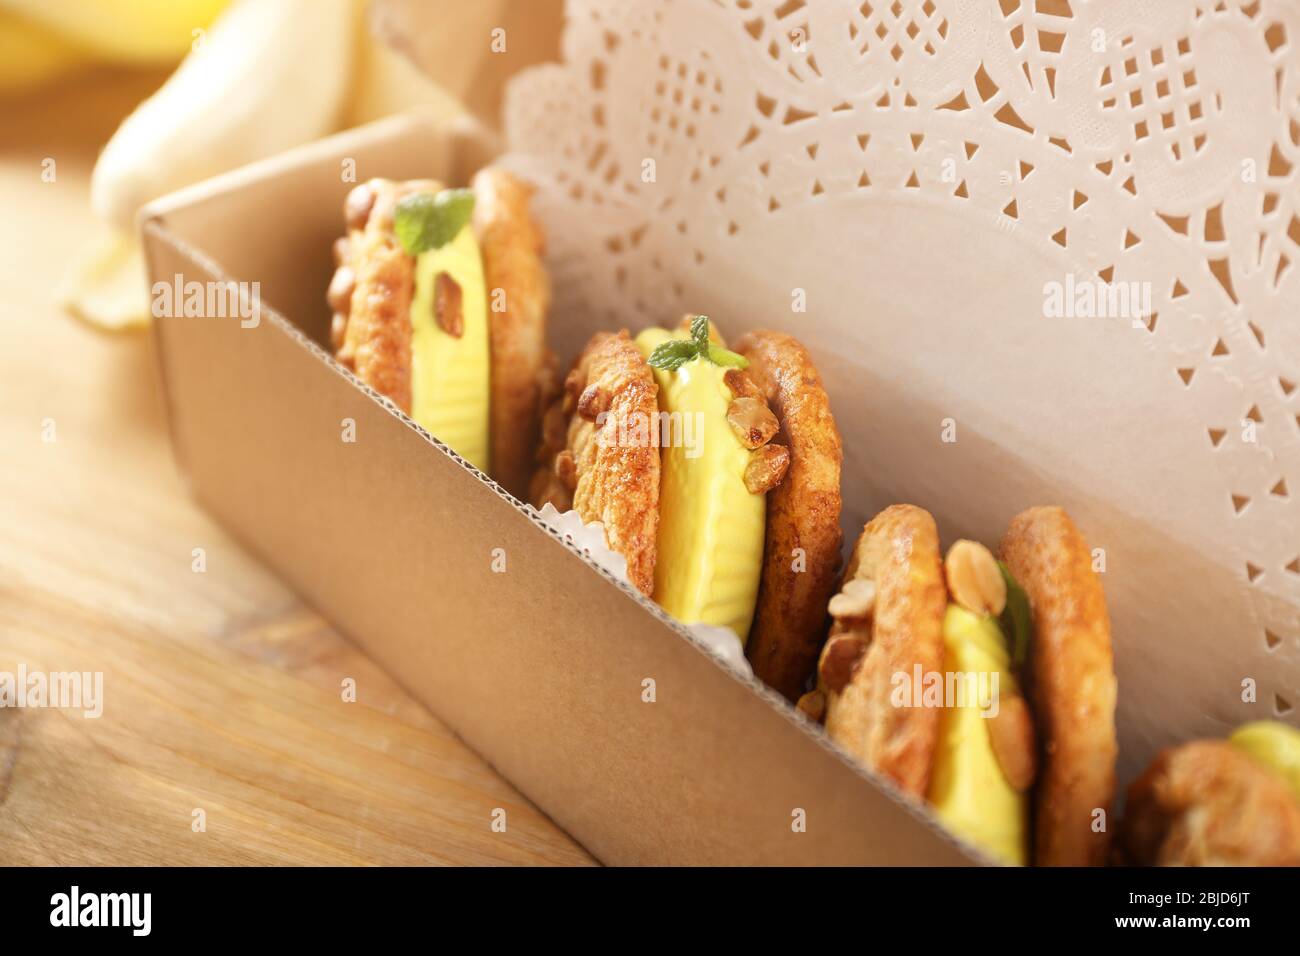 Cartone animato con deliziosi panini gelato al limone su tavolo di legno, primo piano Foto Stock